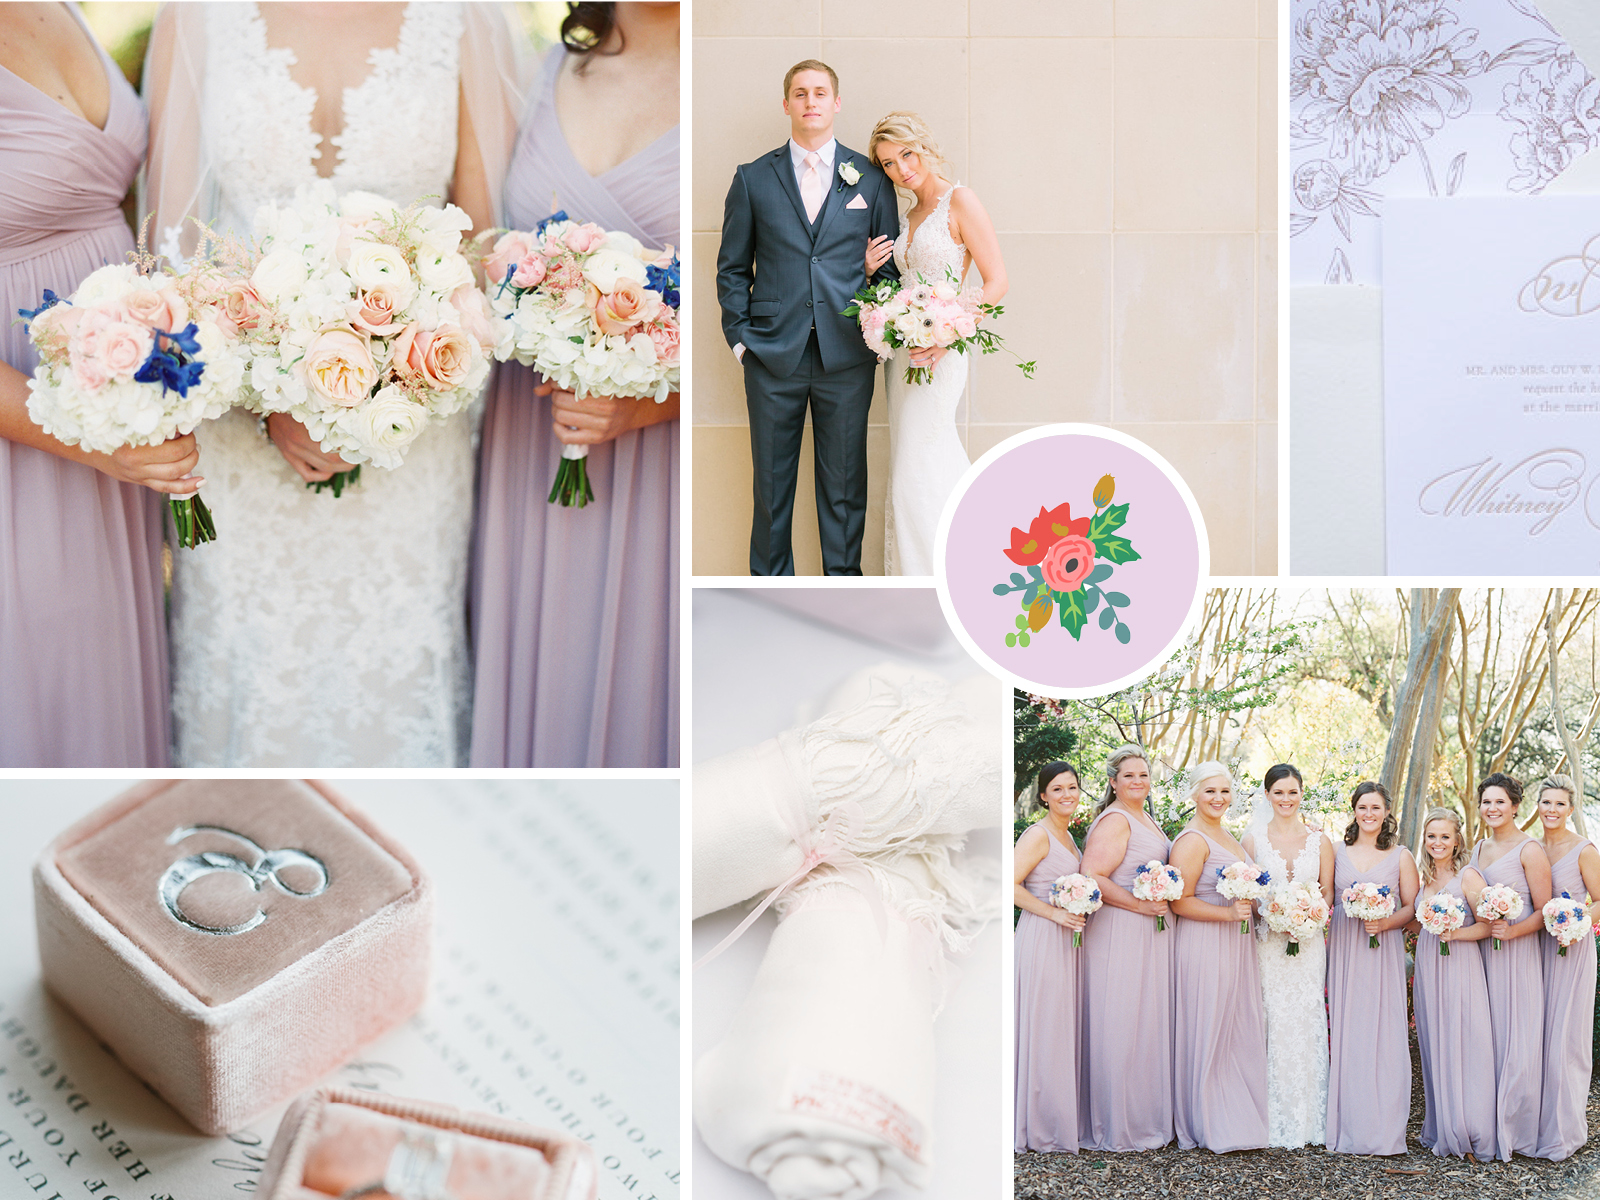 Dallas Wedding Florist + Planner | A Stylish Soiree